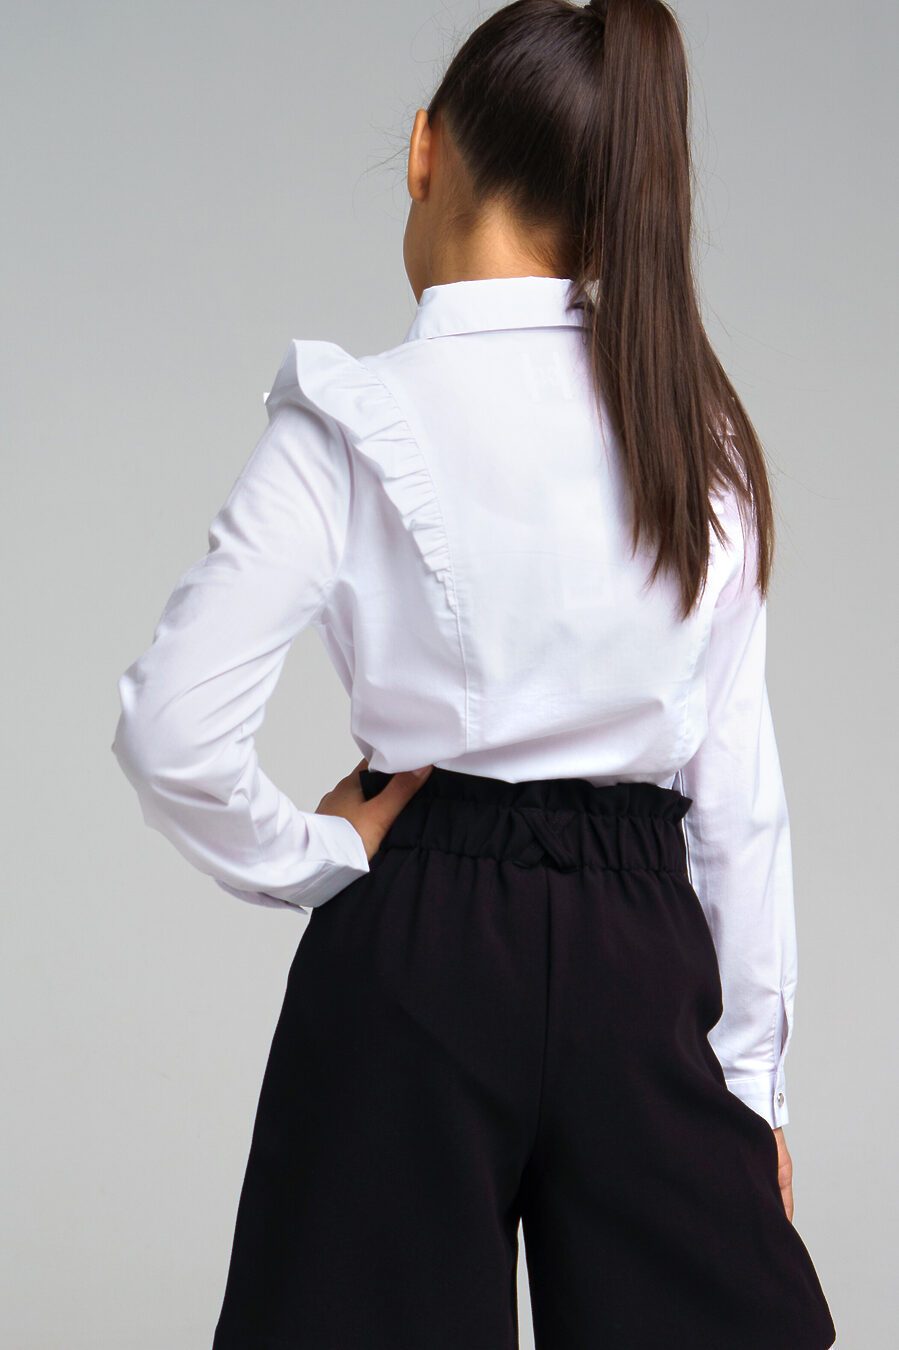 Блуза PLAYTODAY (785752), купить в Moyo.moda